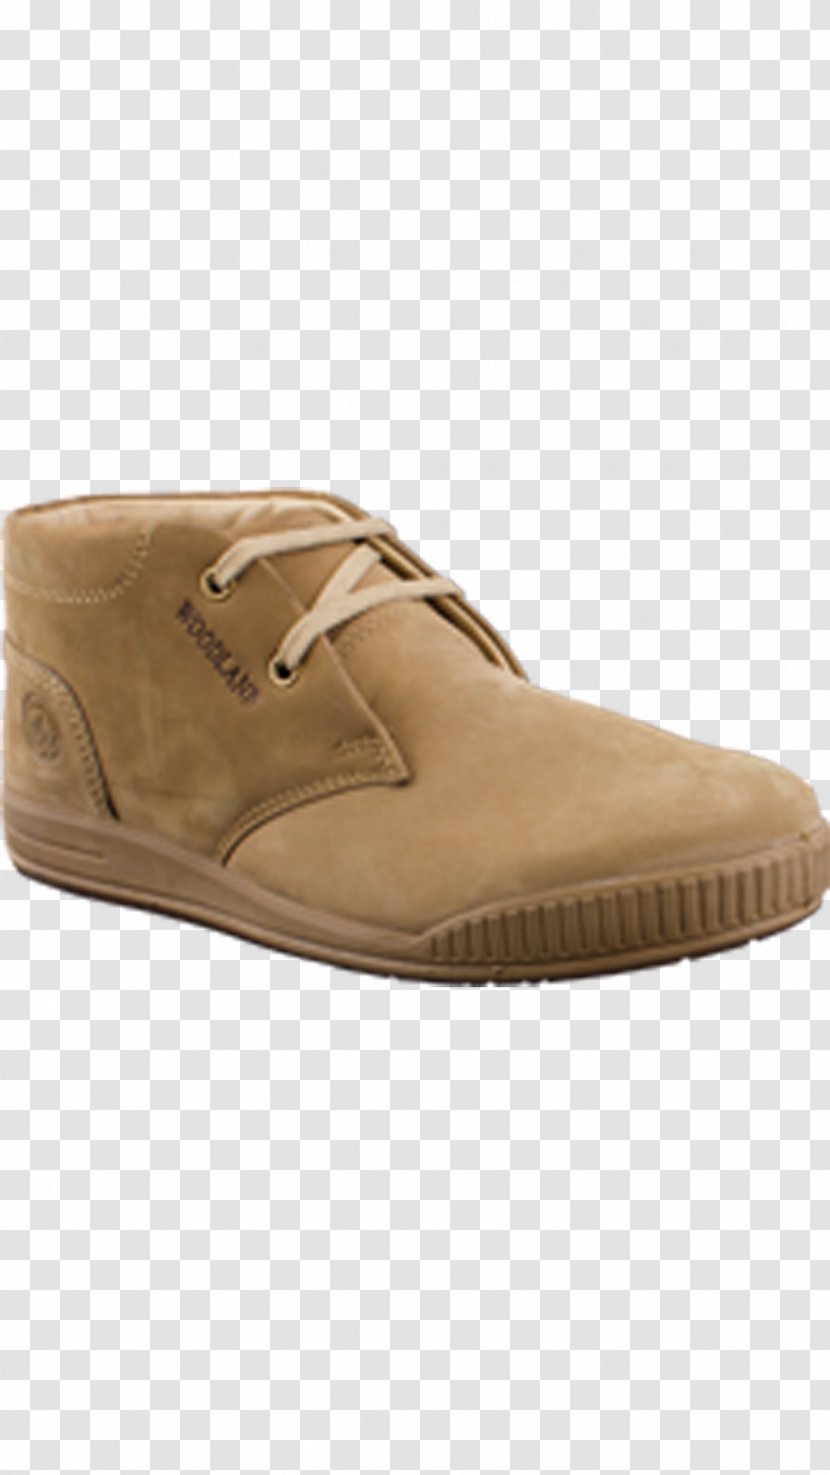 Slip-on Shoe Footwear High-heeled Suede - Sandal Transparent PNG